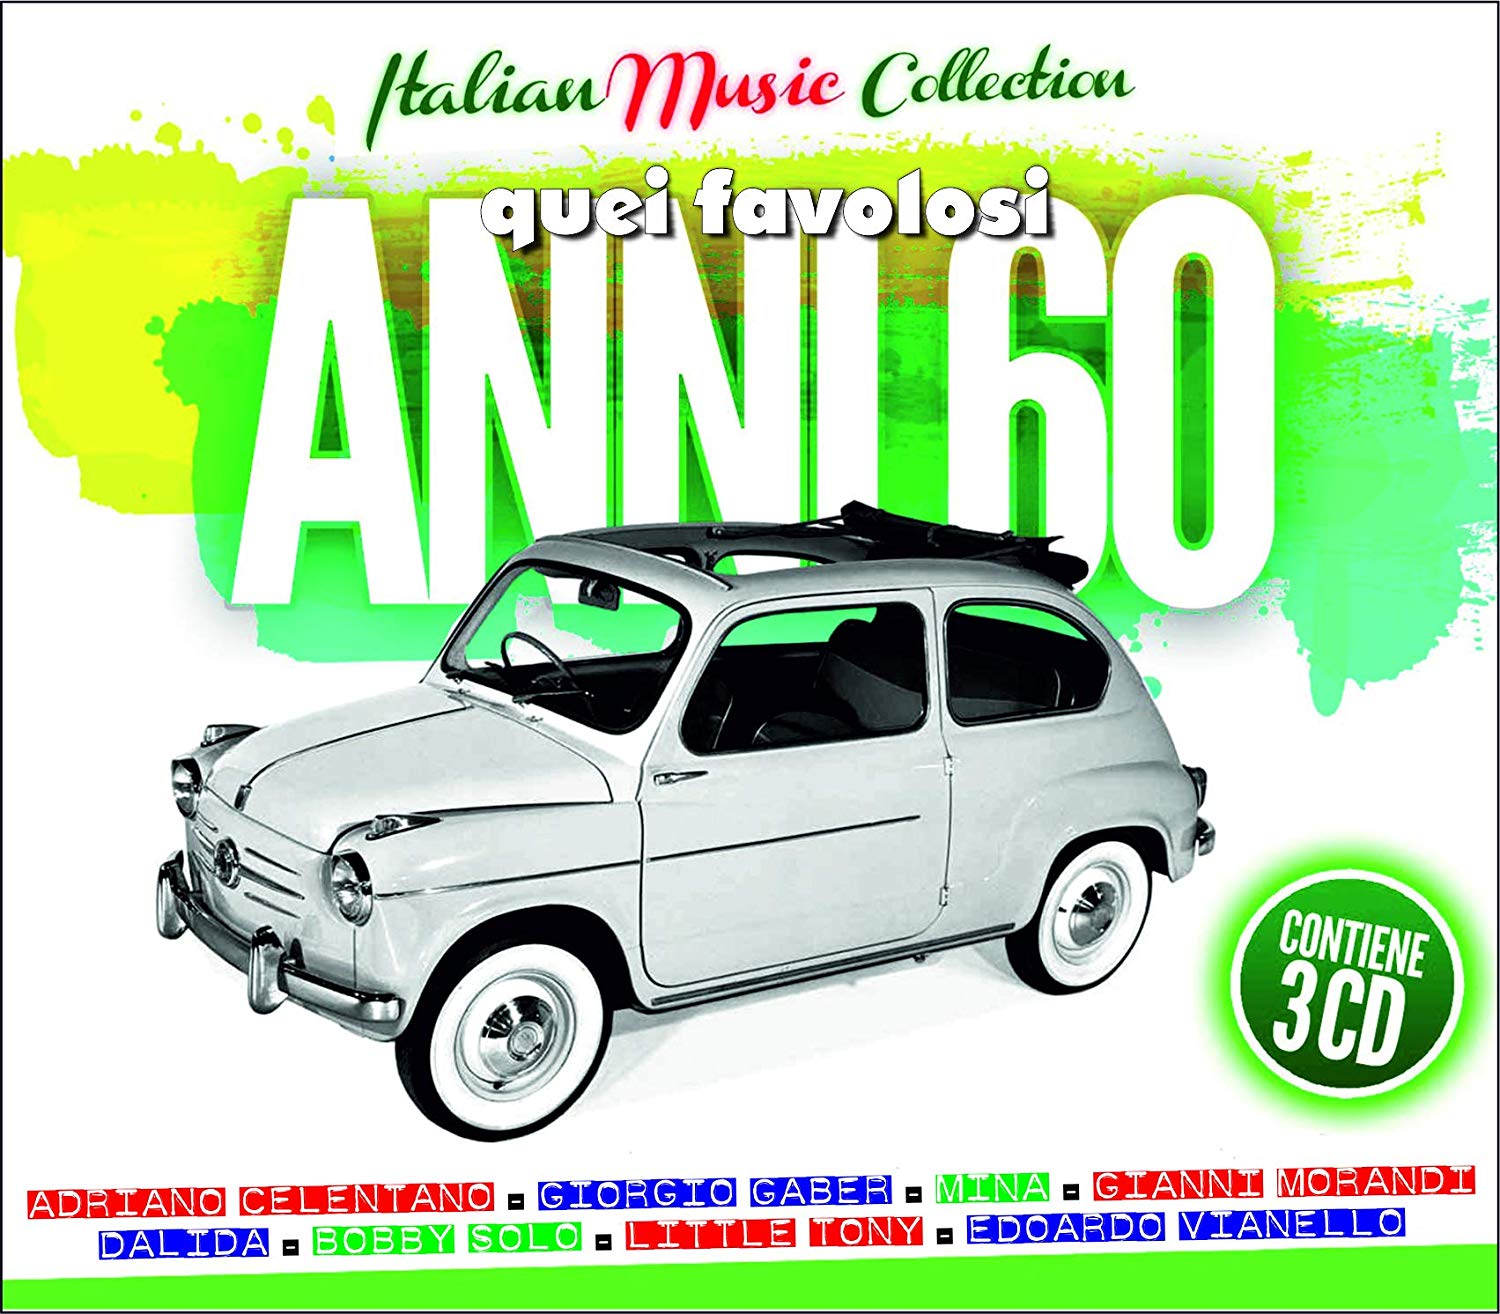 ITALIAN MUSIC COLLECTION QUEI FAVOLOSI ANNI 60